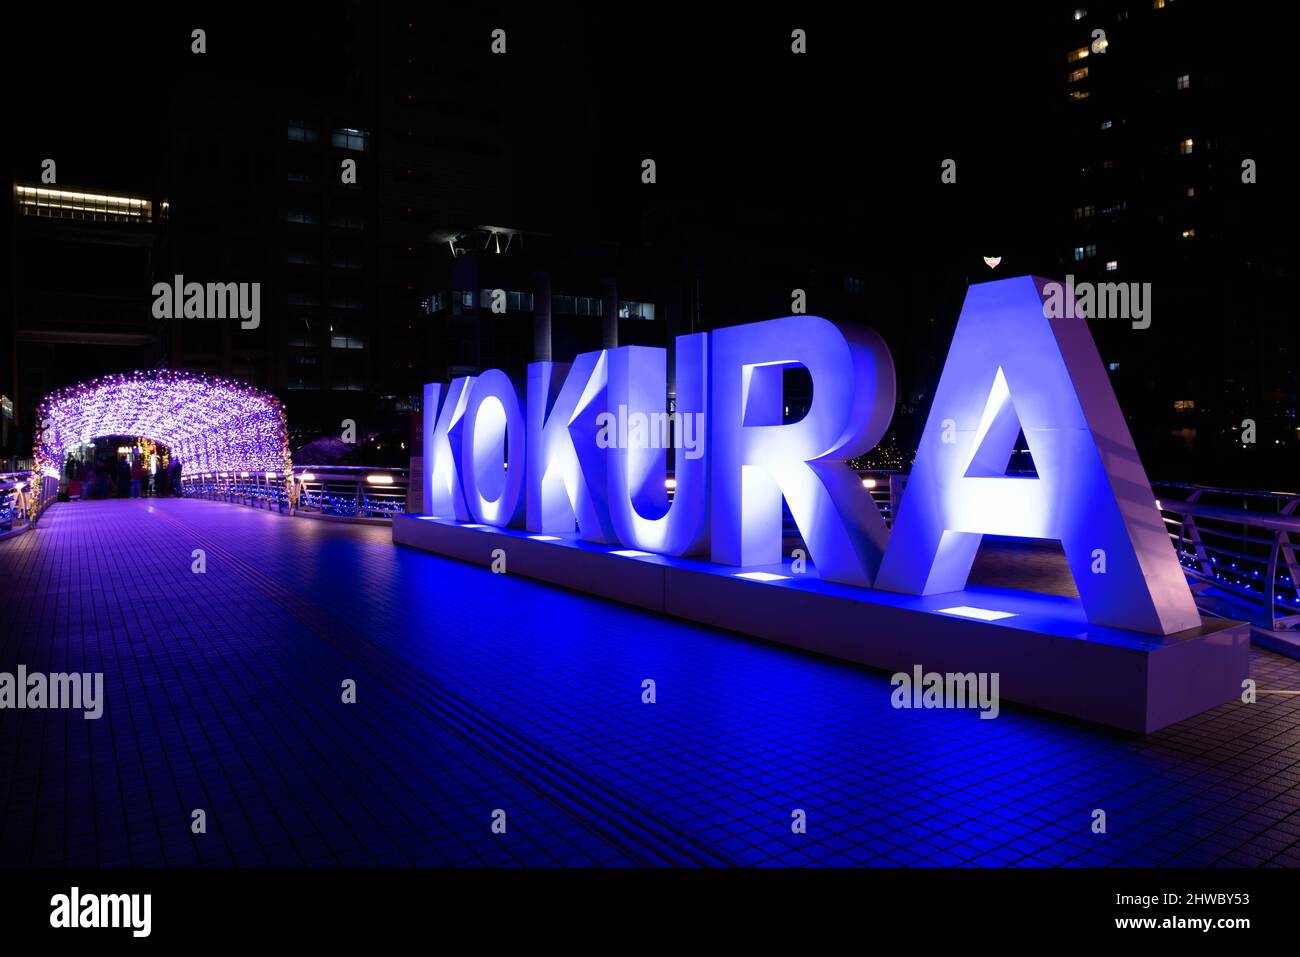 Kokura riverwalk annual winter illumination and night lights in Kokura, Kitakyushu, Japan Stock Photo